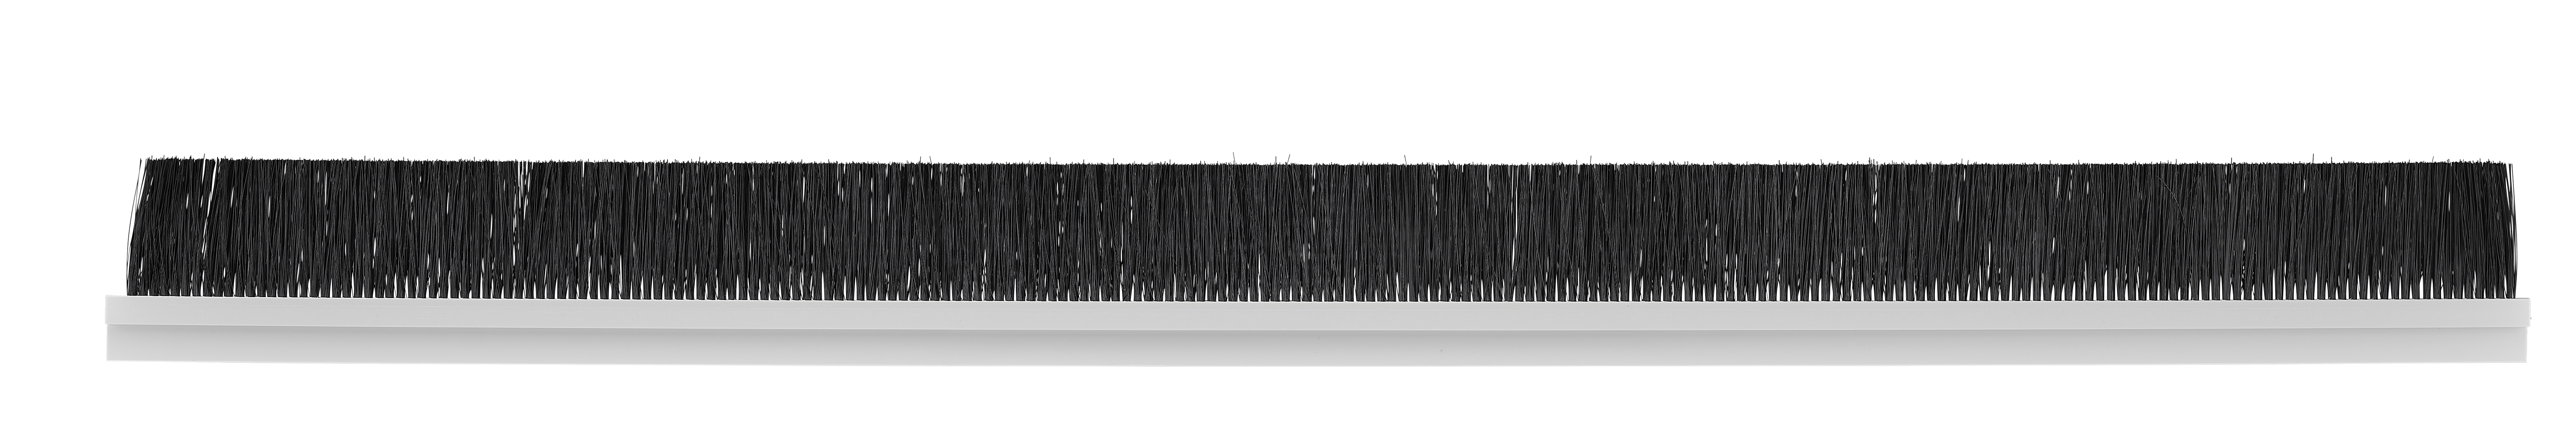 Image of Rigid PVC Strip Brushes 